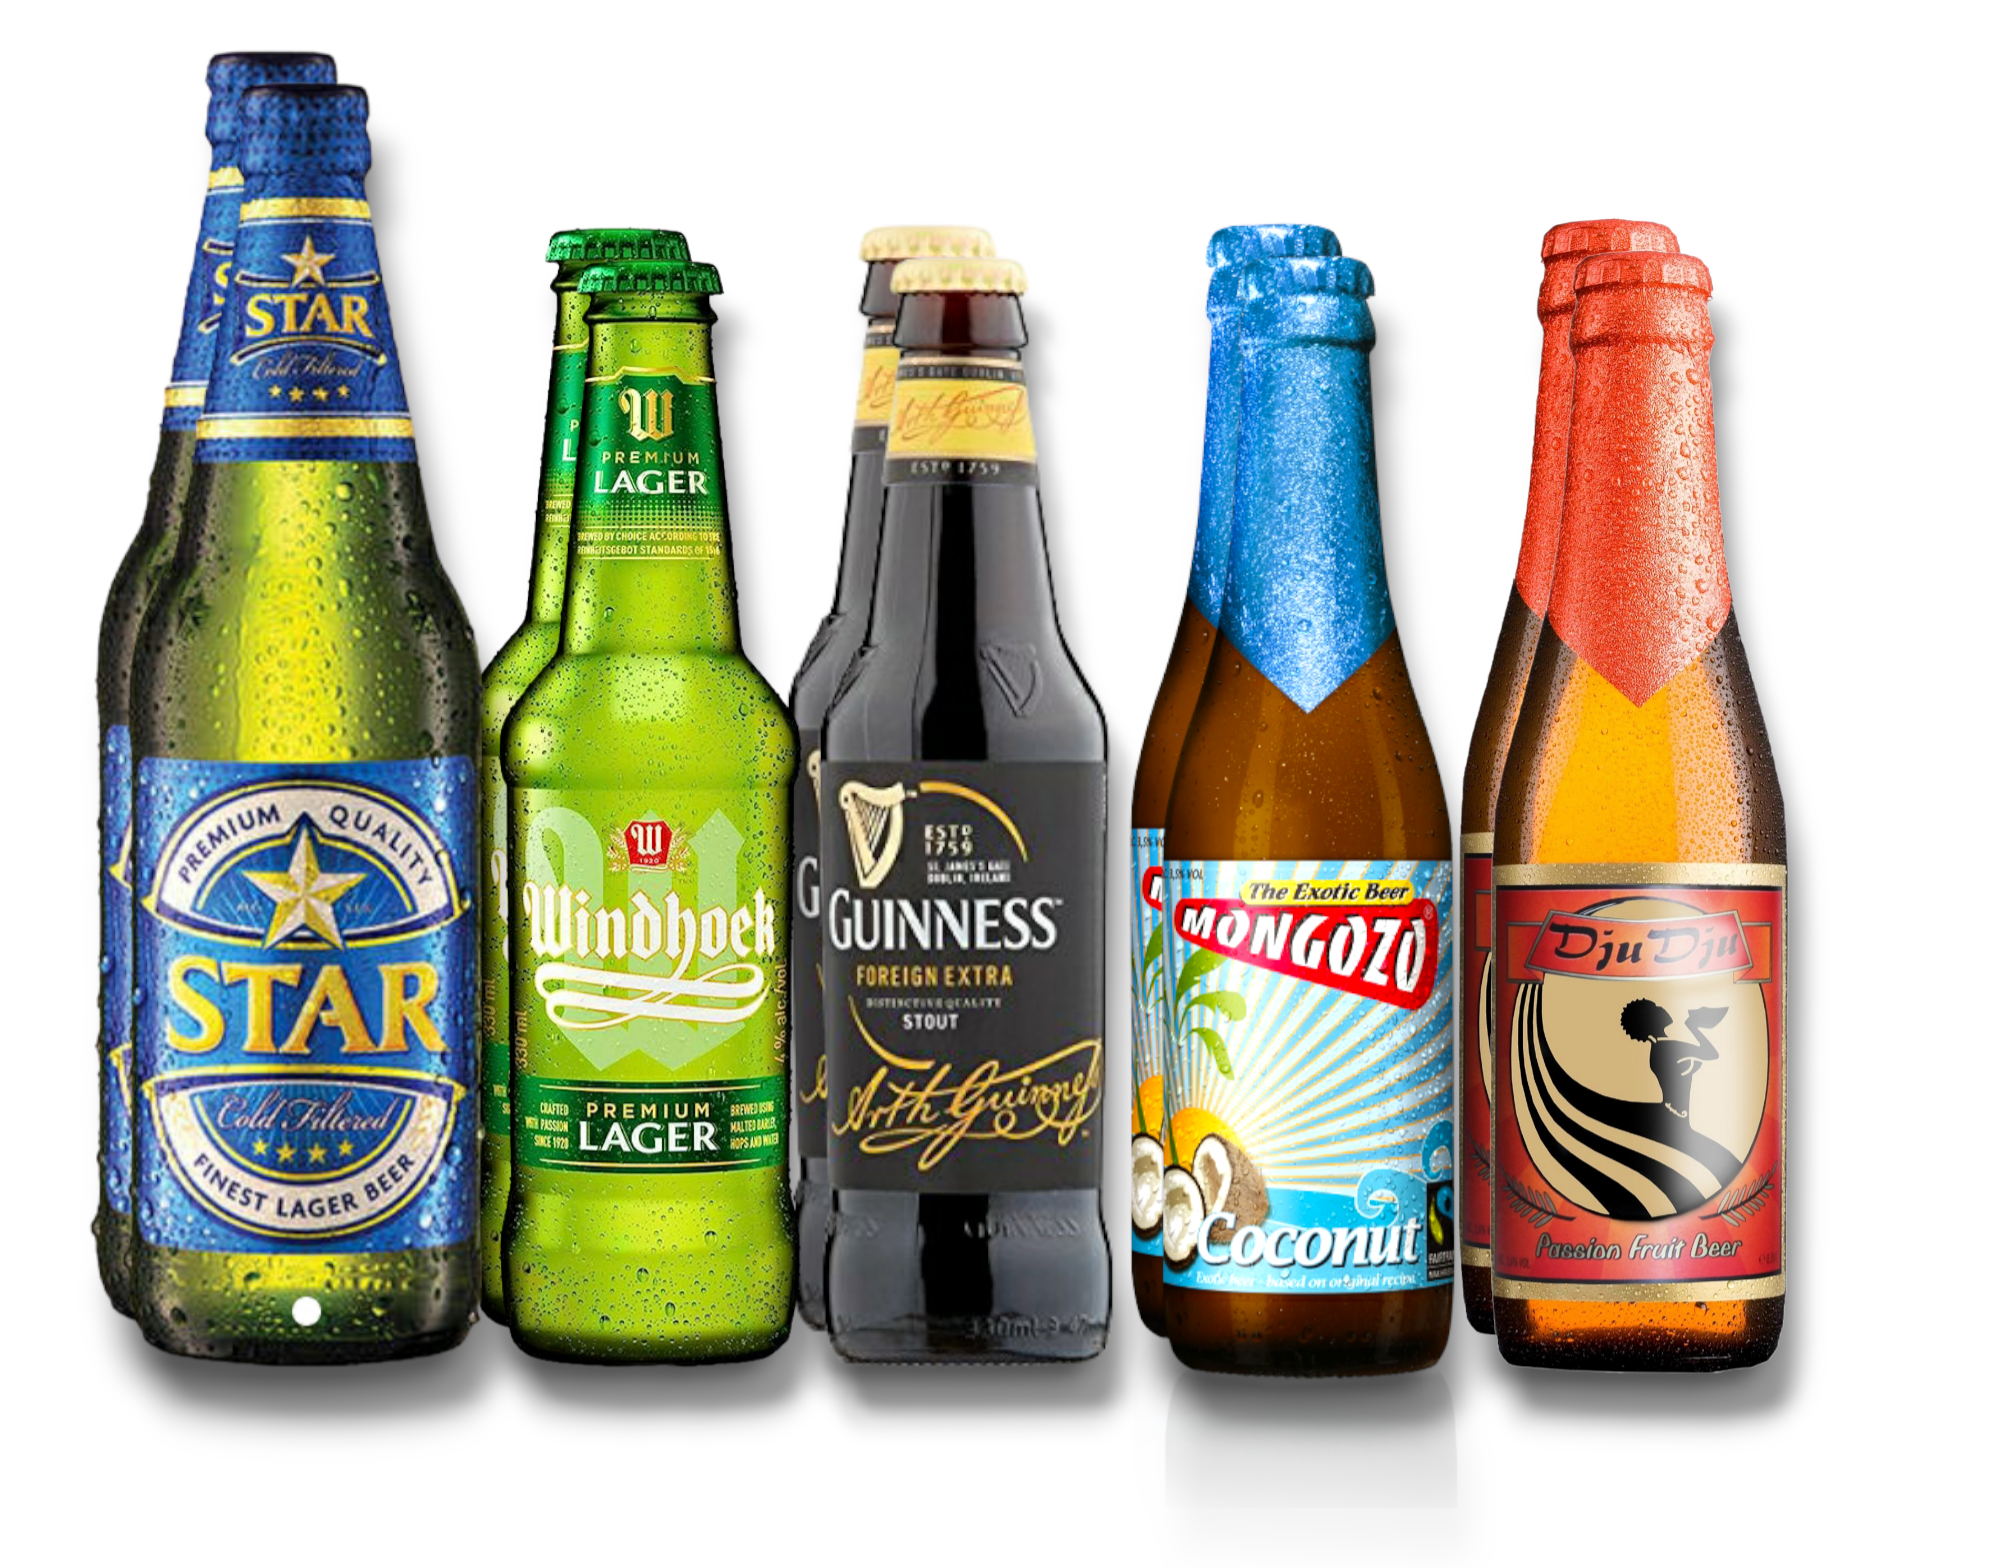 Afrika Probierpaket- Teste Nigeria, Ghana, und Namibia mit 5 beliebten Sorten Bier aus Afrika